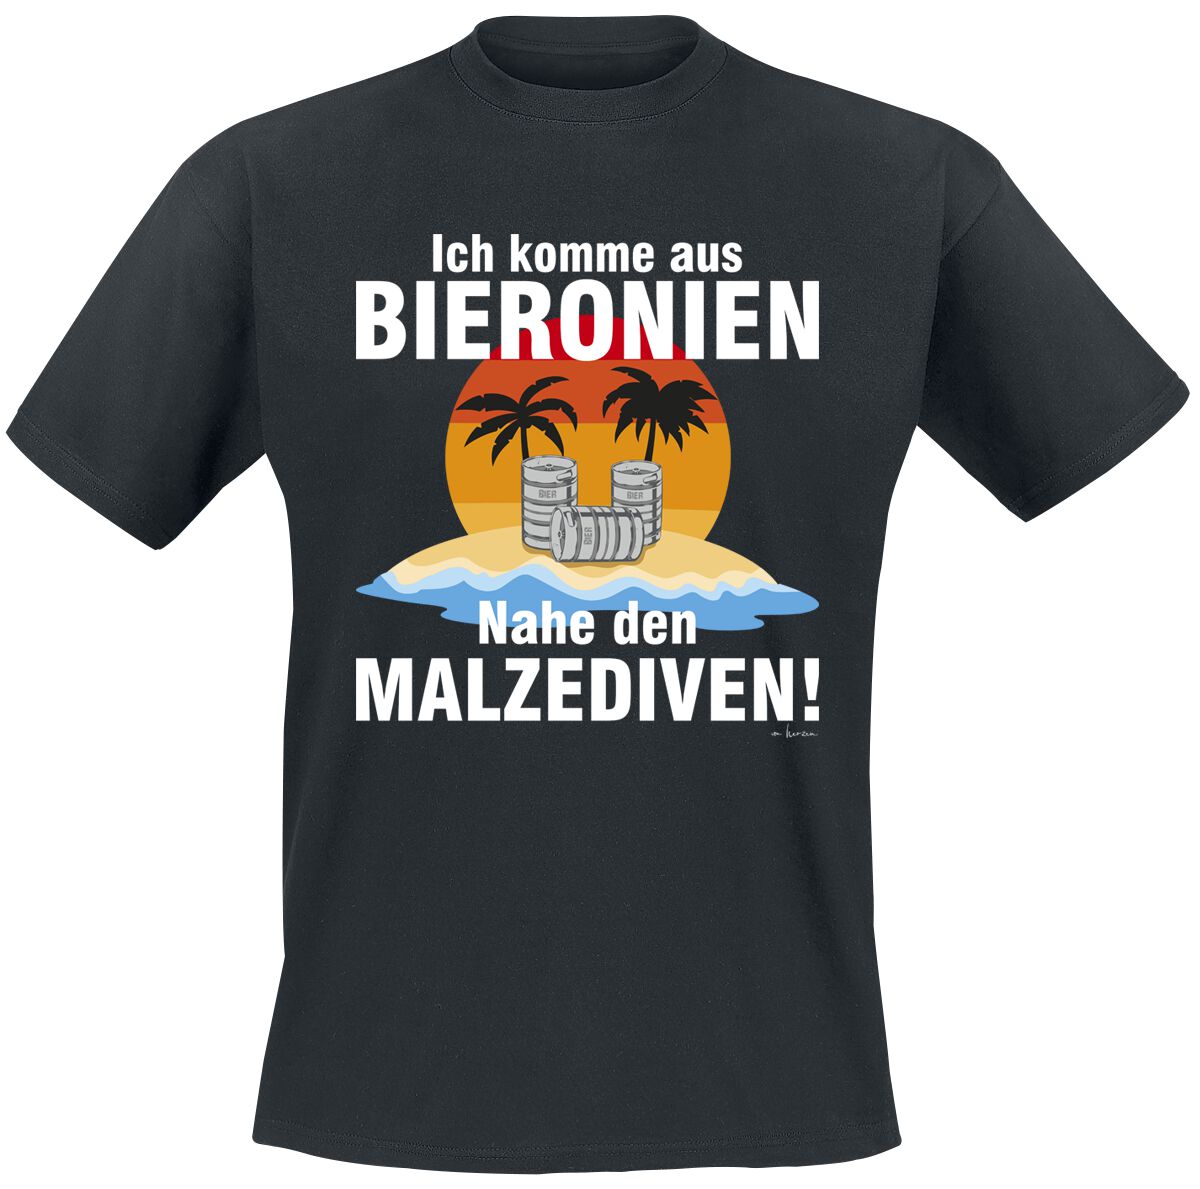 Alkohol & Party T-Shirt - Ich komme aus Bierkonien - M bis 5XL - für Männer - Größe XXL - schwarz